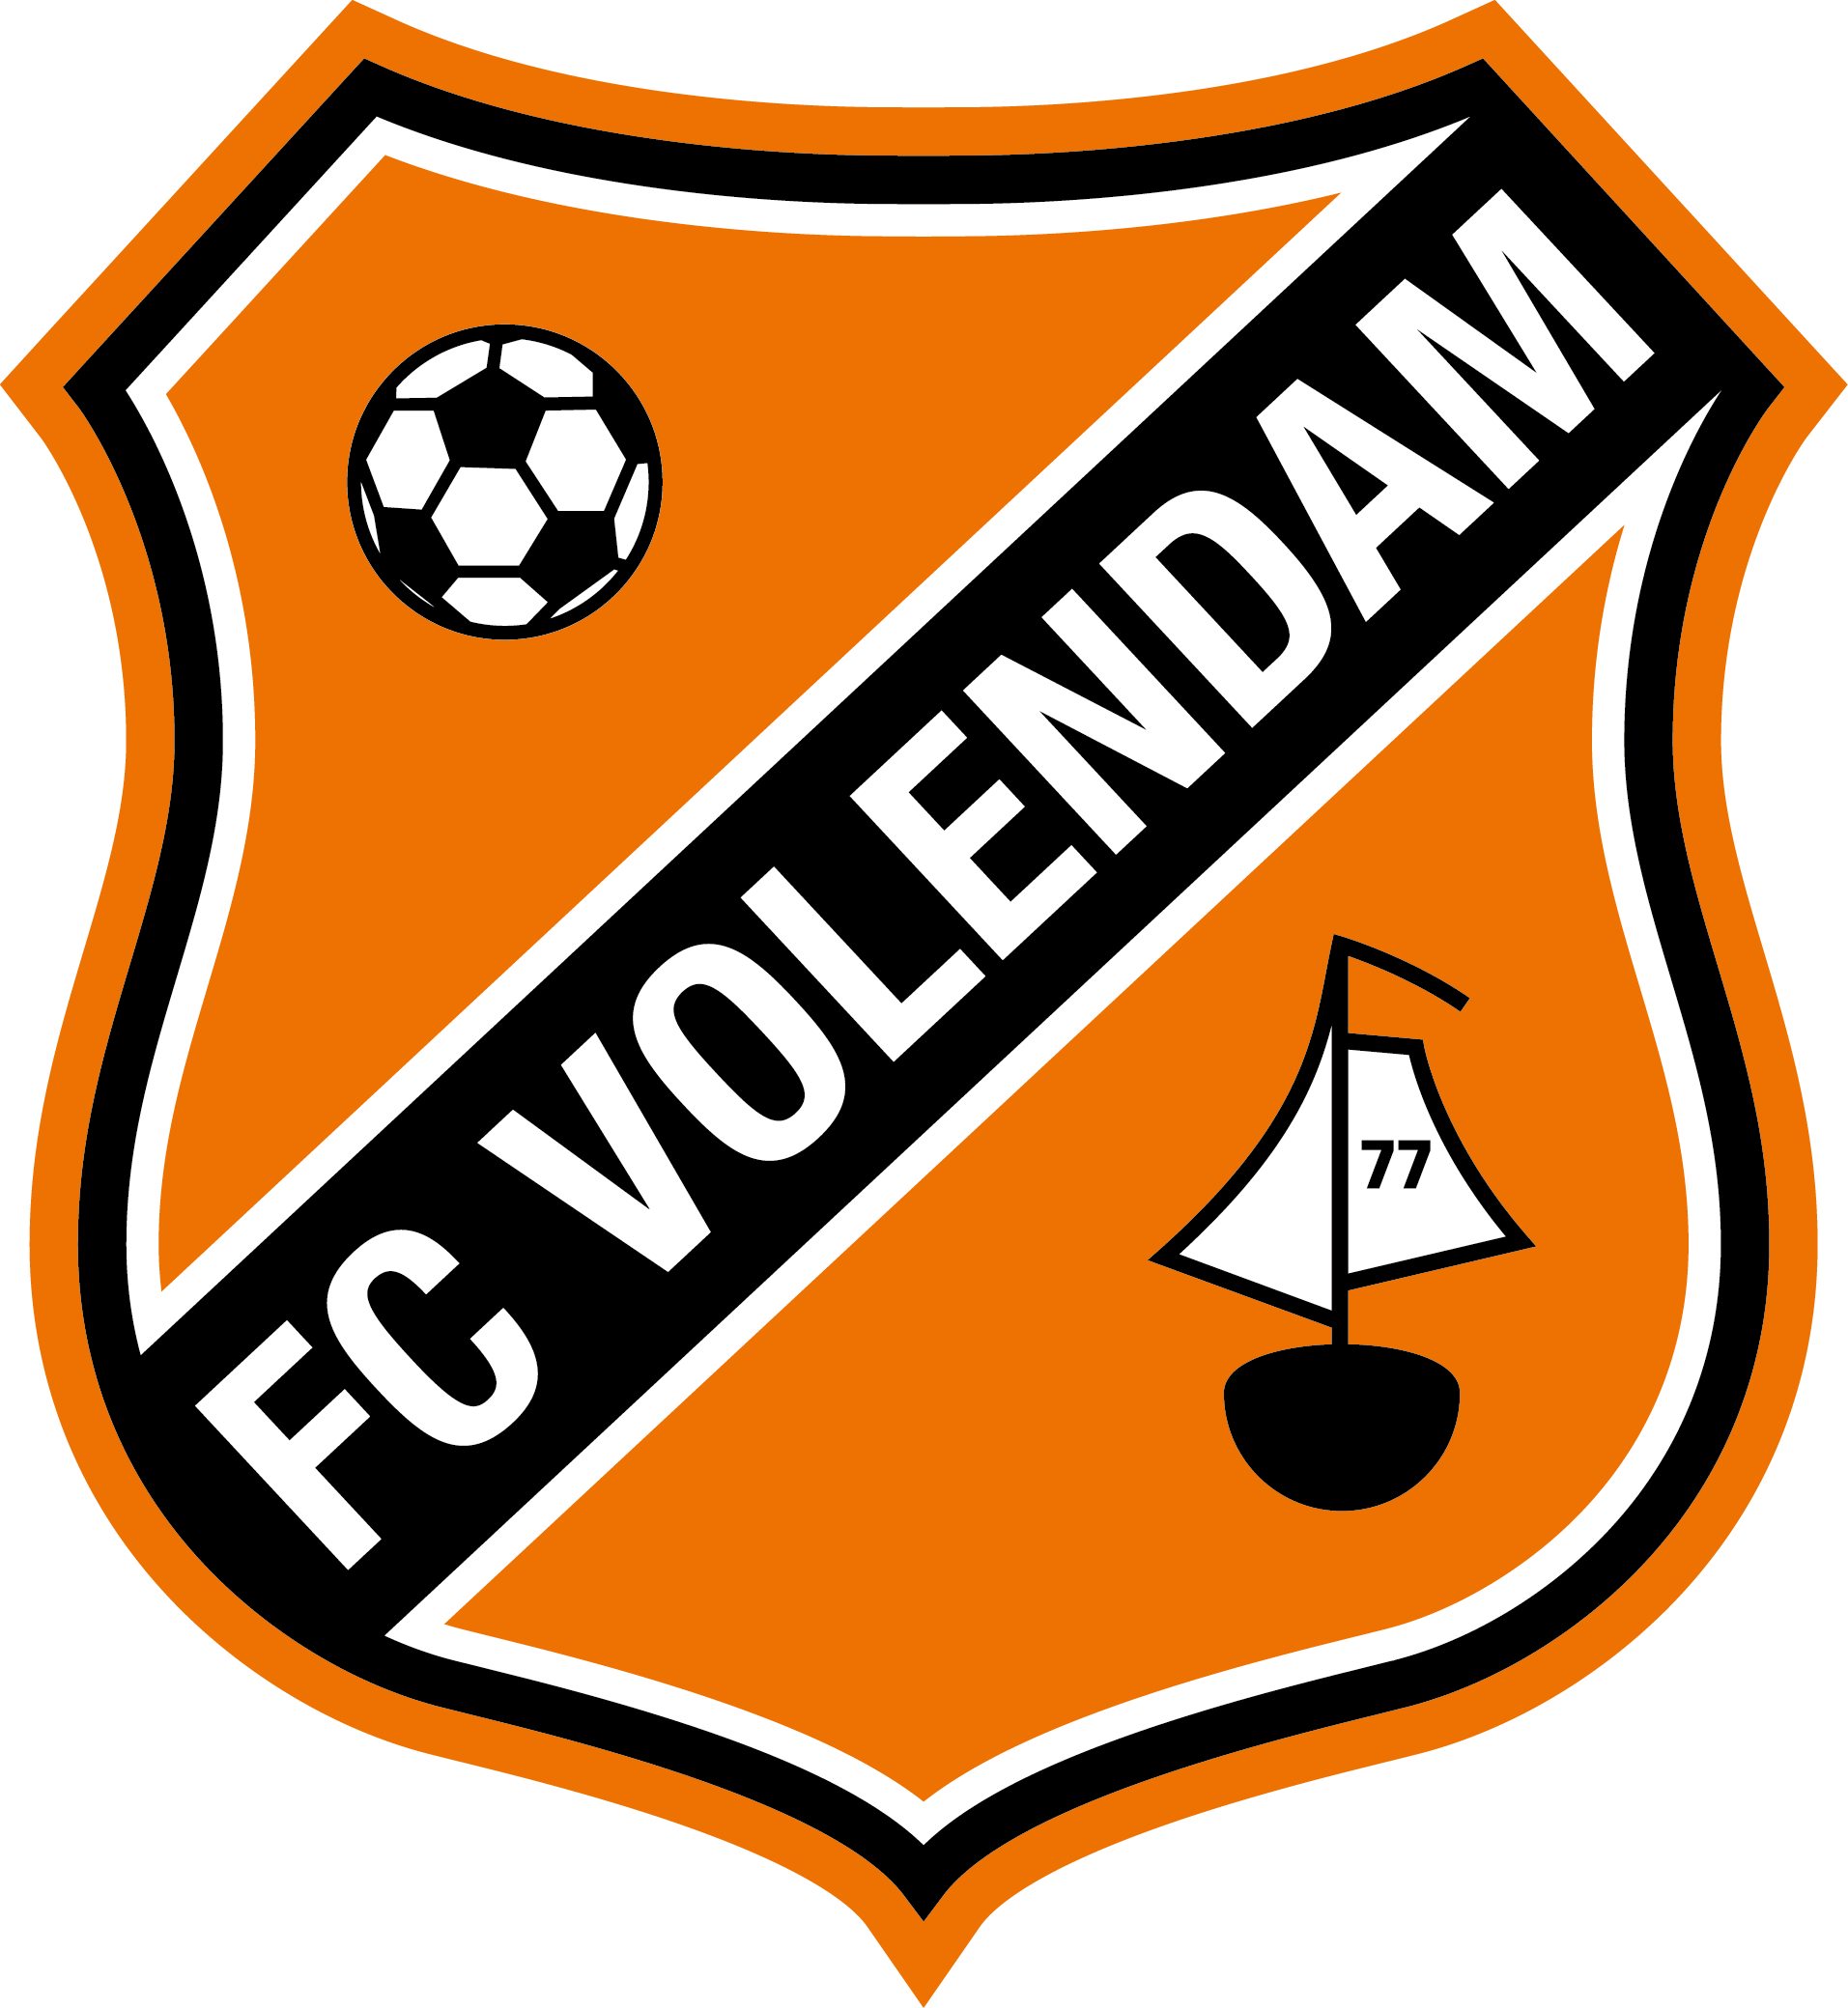 荷兰队徽 - 先看荷兰队徽的狮子